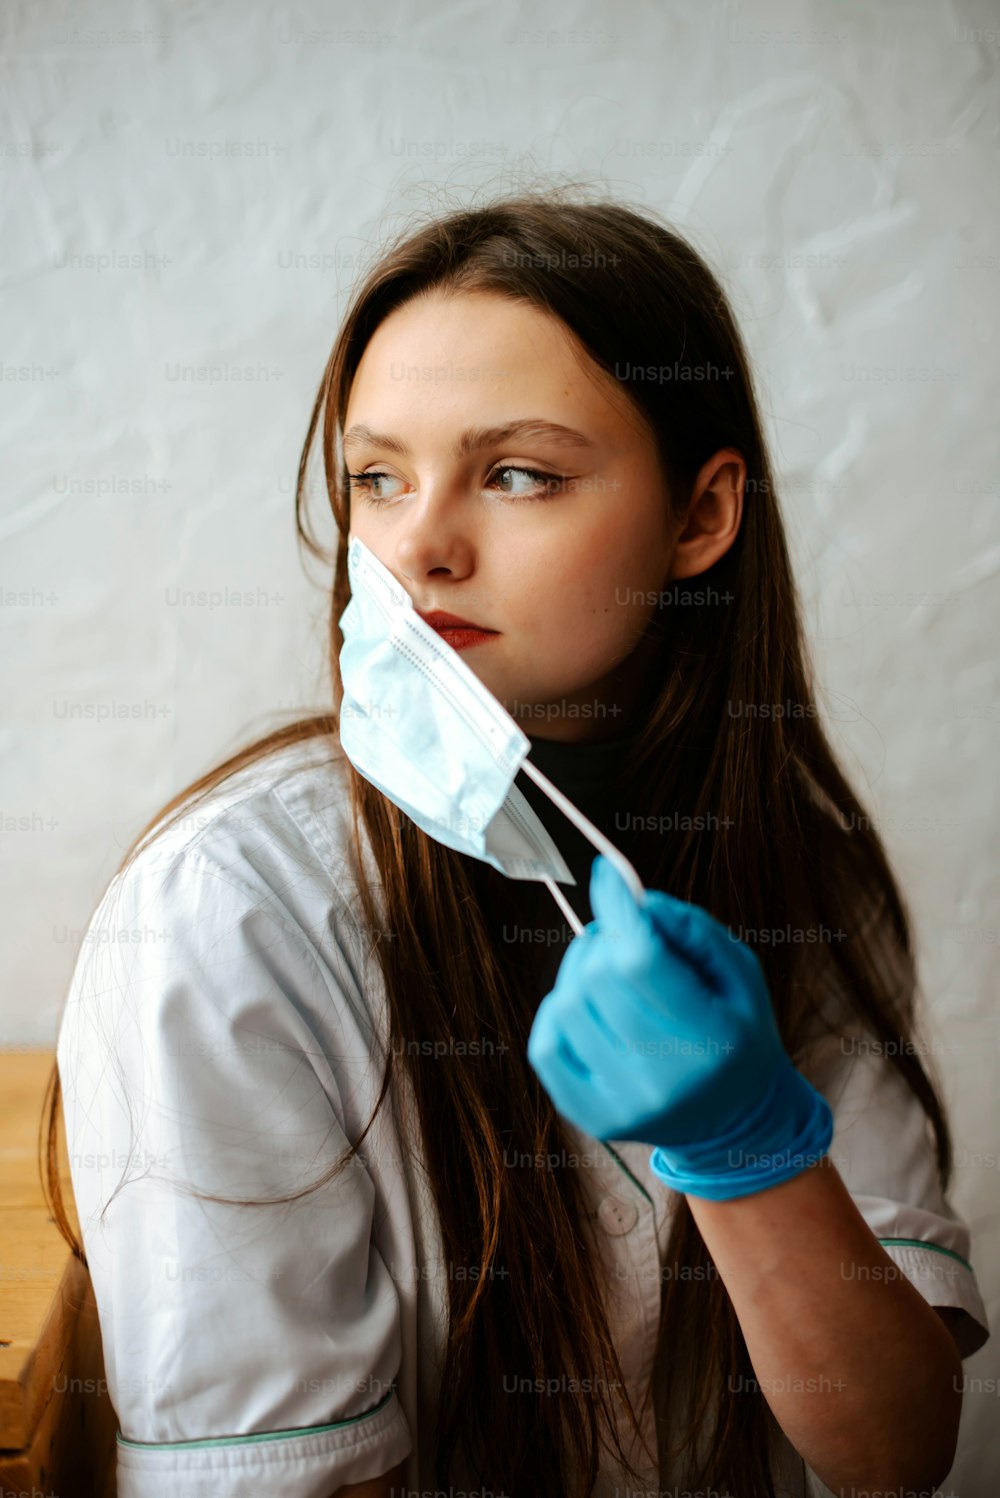 Una donna con una camicia bianca e guanti blu tiene una maschera chirurgica sulla bocca